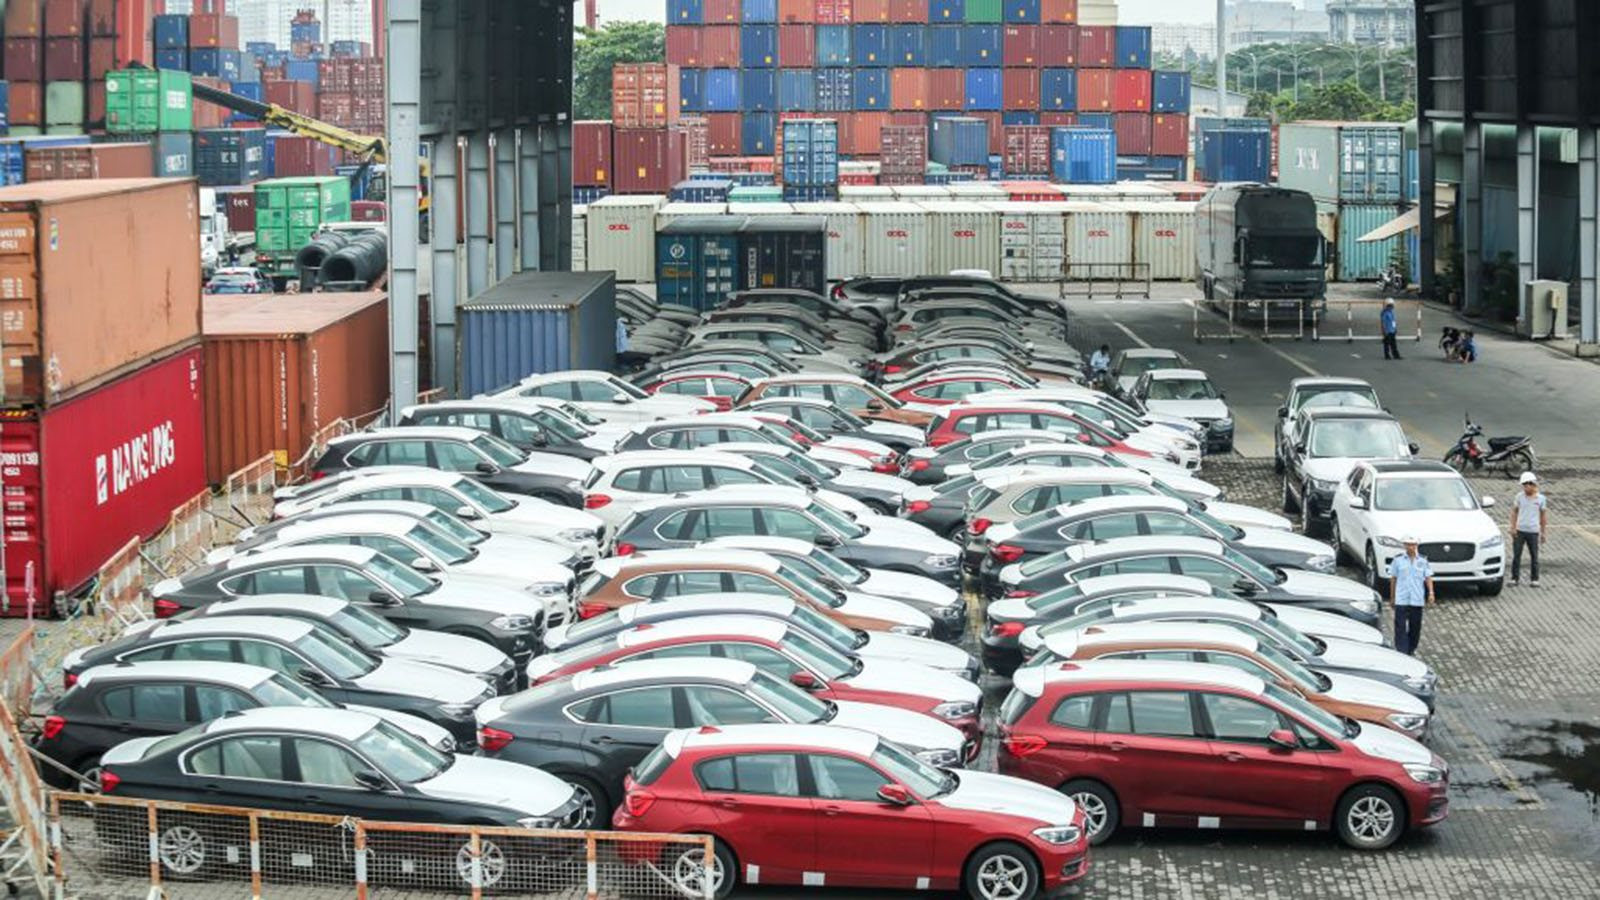 Trong một tháng, Việt Nam nhập khẩu hơn 12.000 chiếc ô tô, chủ yếu 9 chỗ trở xuống, một dòng xe không nhập chiếc nào - Ảnh 1.